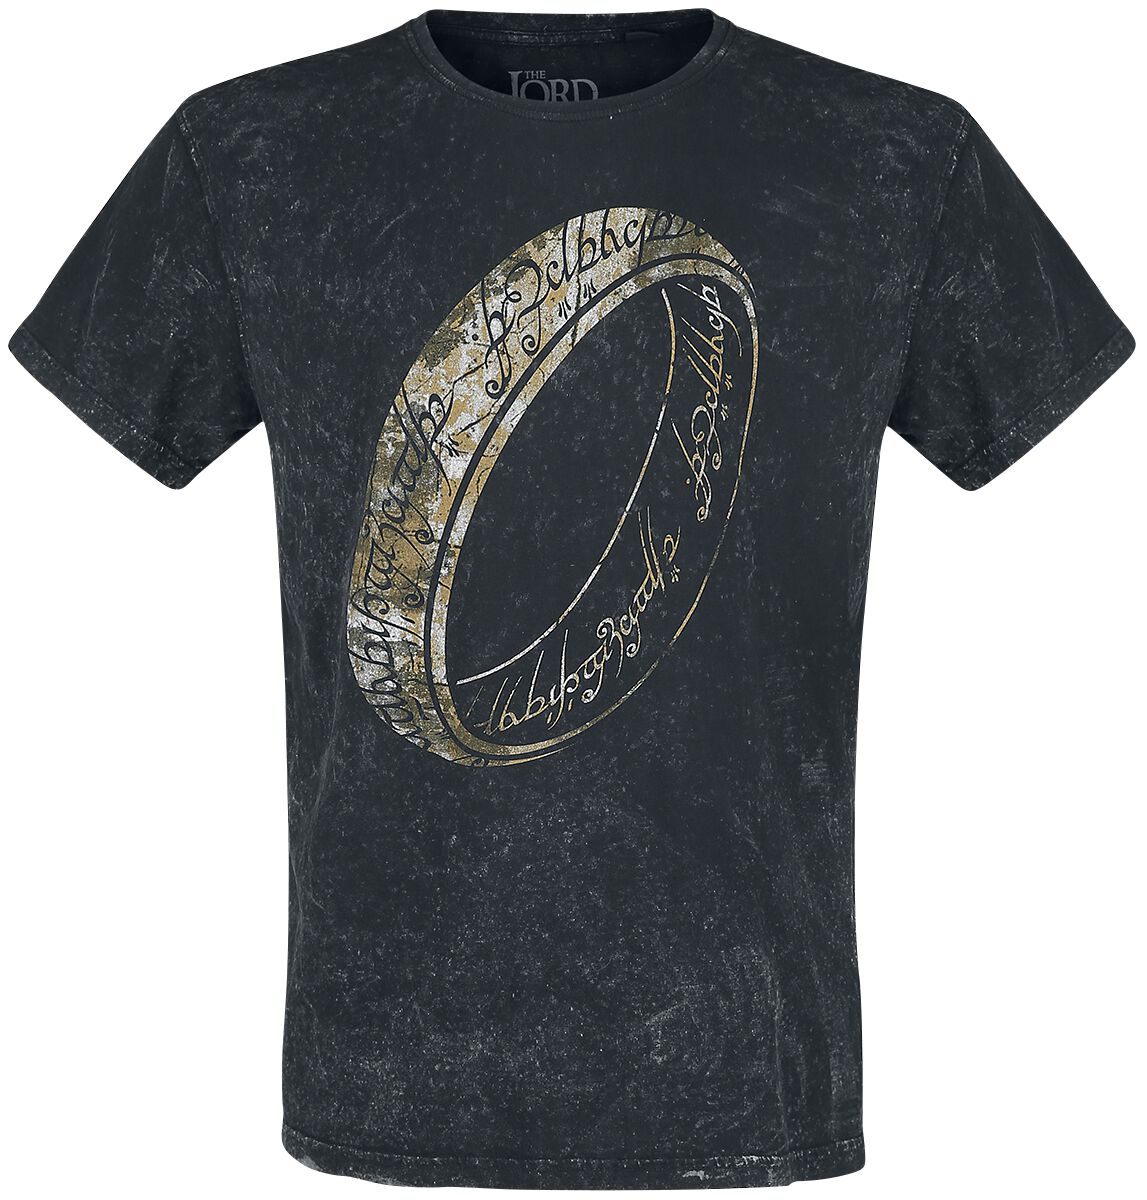 Der Herr der Ringe T-Shirt - One Ring To Rule Them All - M bis XXL - für Männer - Größe M - schwarz  - EMP exklusives Merchandise!